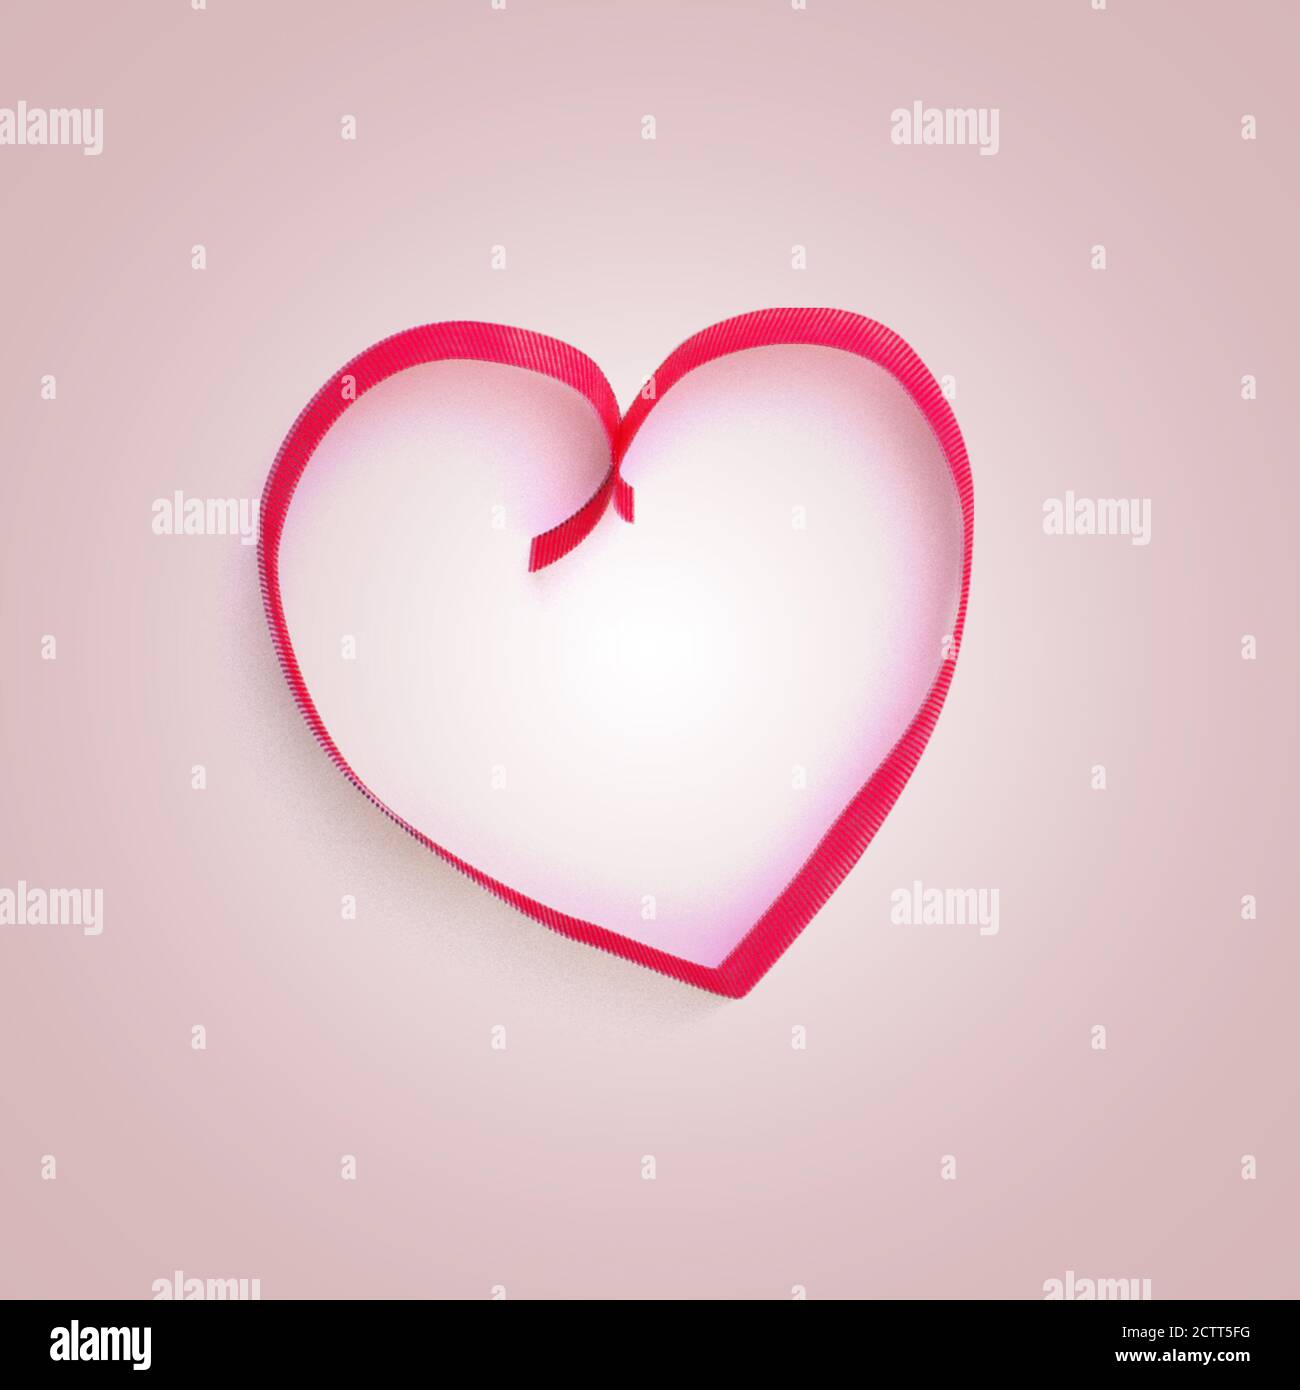 Noeud rouge décoratif et rubans en forme de coeur sur fond rose. Vacances, décoration de Saint-Valentin. Lié au cadeau. Cadre avec espace de copie. Banque D'Images